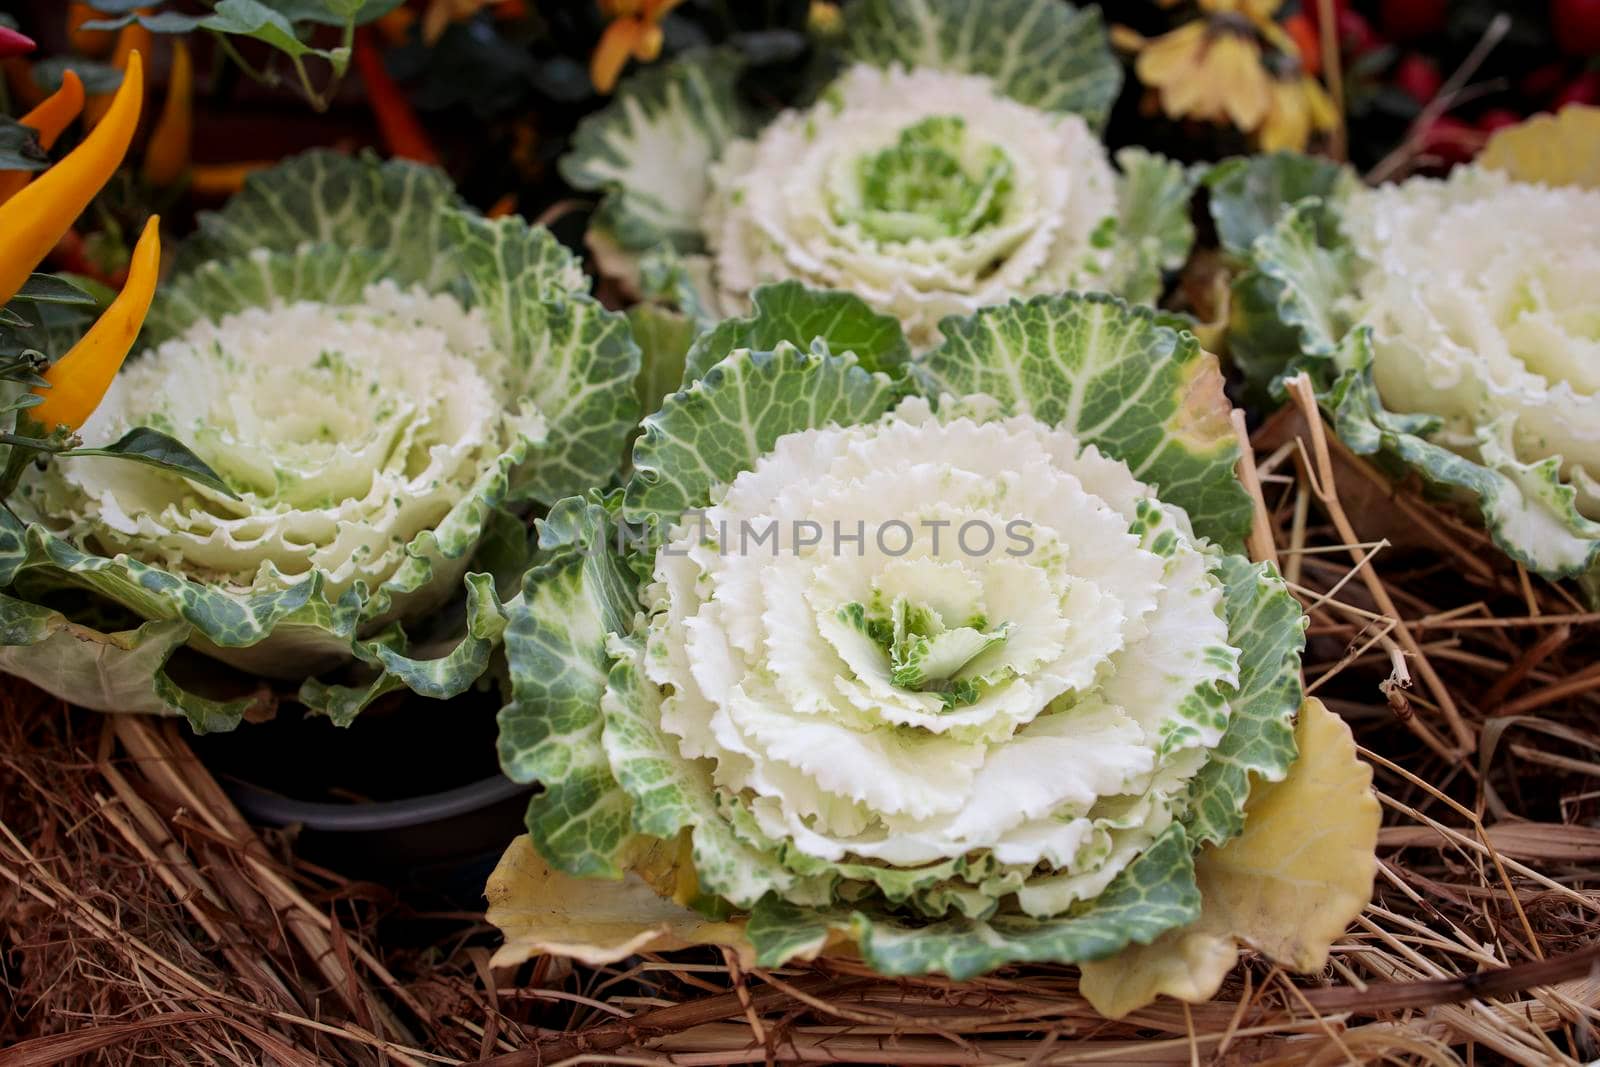 Ornamental white brassica cabbage decorate the farm stall by elenarostunova